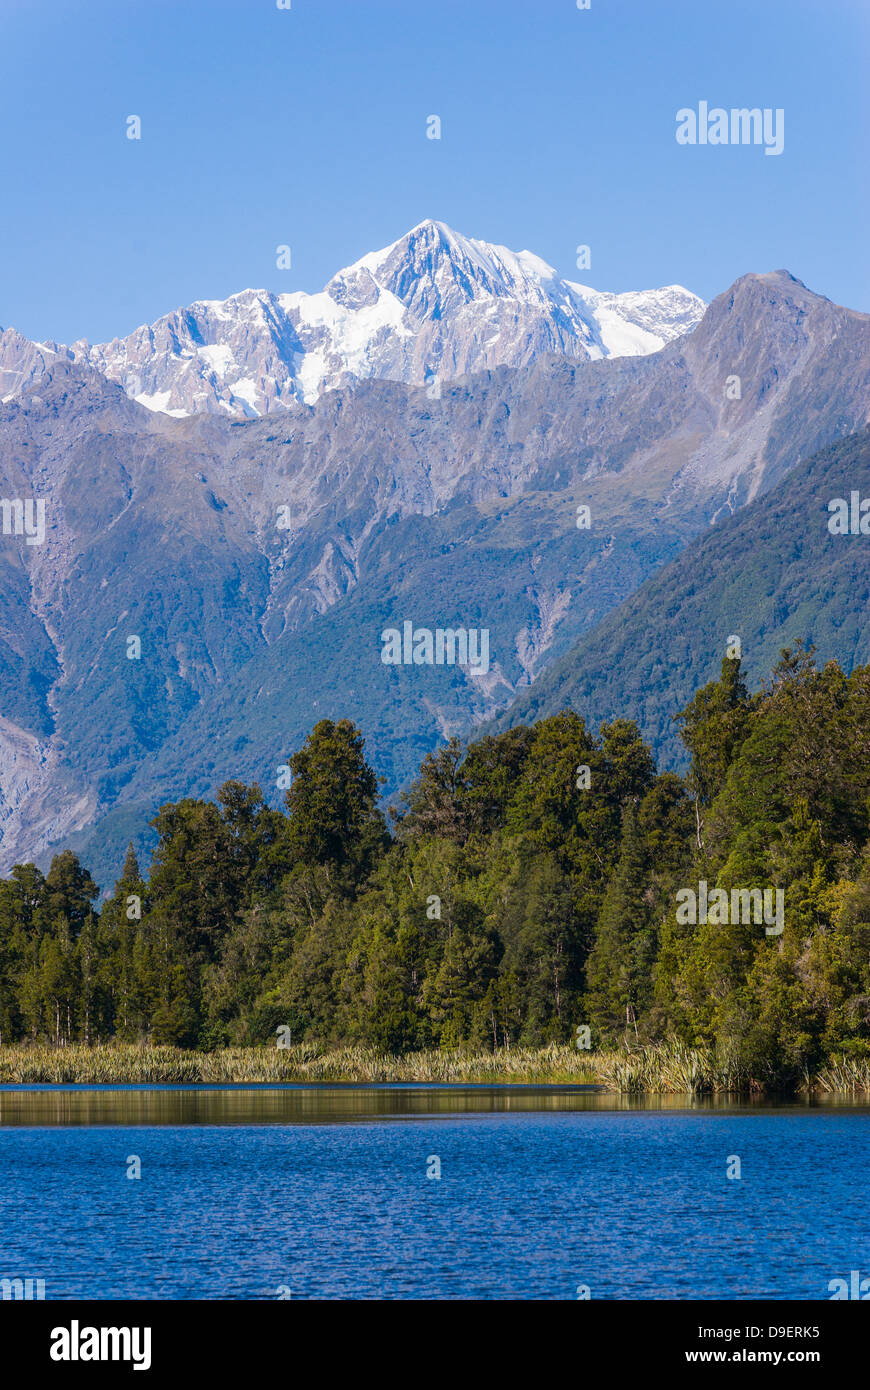 Parc Aoraki/Mount Cook (3754m) est la plus haute montagne en Nouvelle-Zélande et est vue ici du lac Matheson, près de Fox Glacier. Banque D'Images